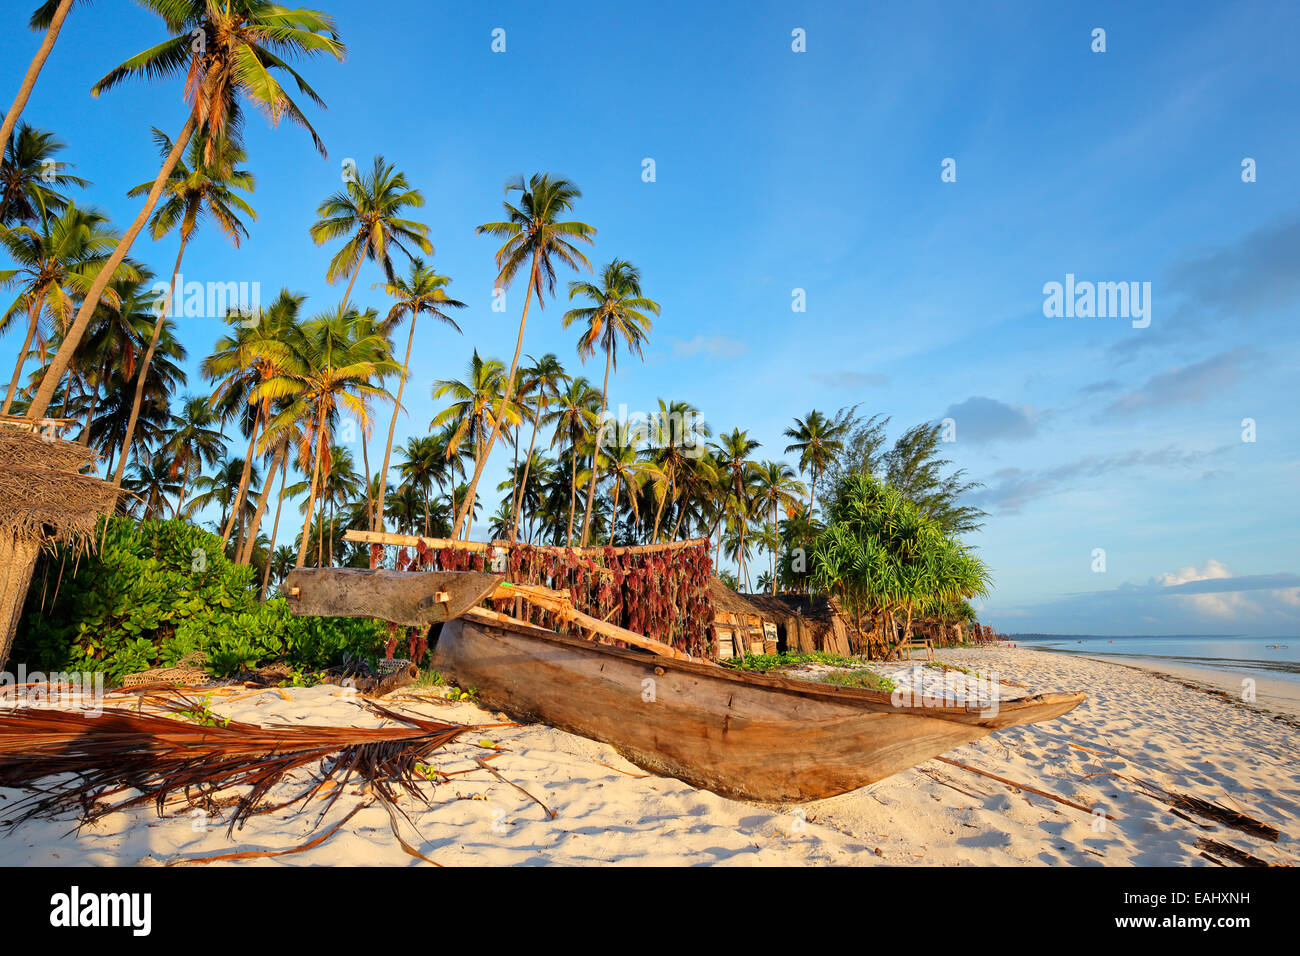 Imbarcazione a vela in legno (dhow) e palme su una spiaggia tropicale dell'isola di Zanzibar Foto Stock